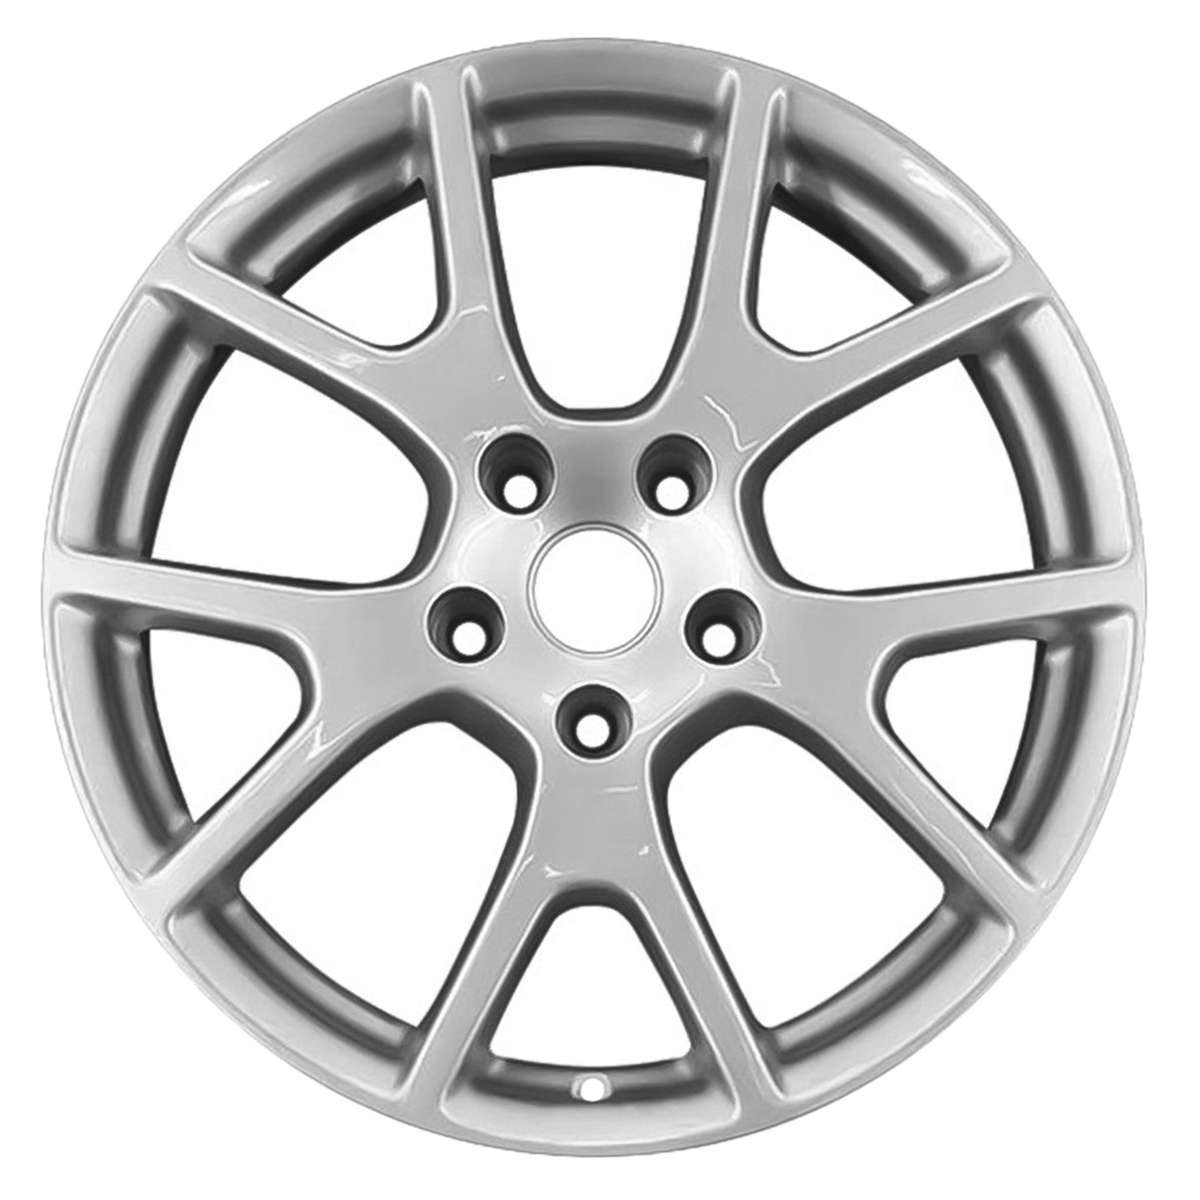 2016 Dodge Journey New 19" Replacement Wheel Rim RW2500S